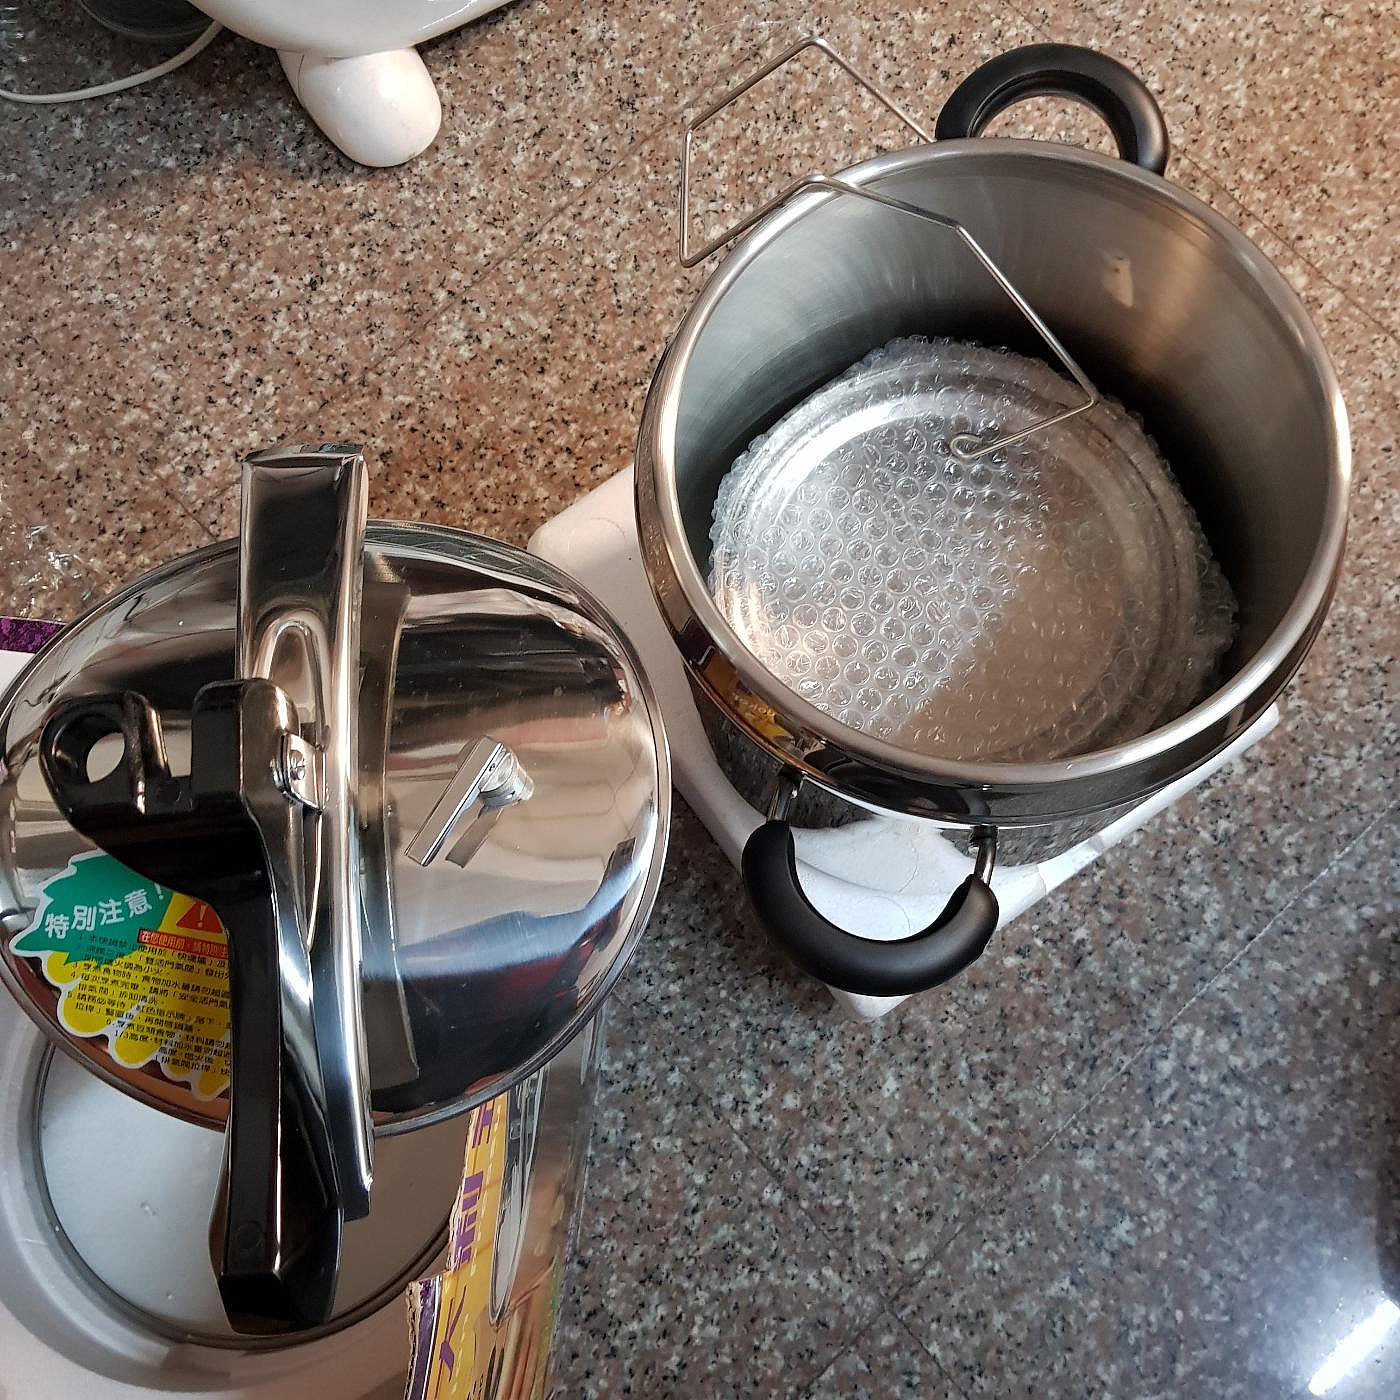 廚寶 義大利式快鍋 壓力鍋 全新未使用 10.5公升 便宜賣 歡迎自取